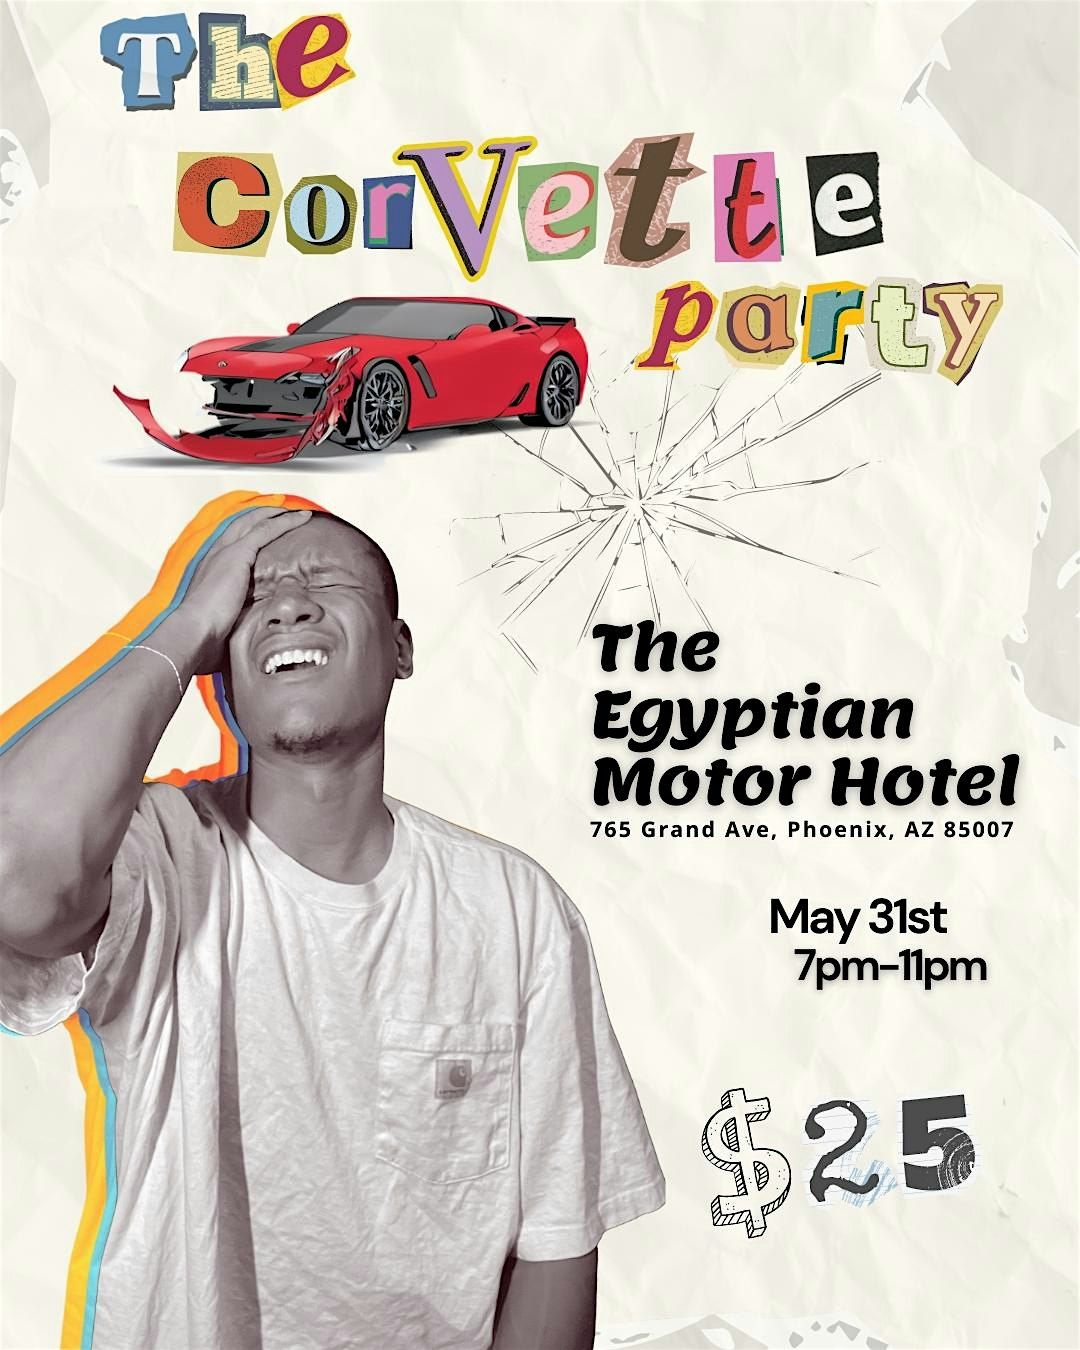 The Corvette Party